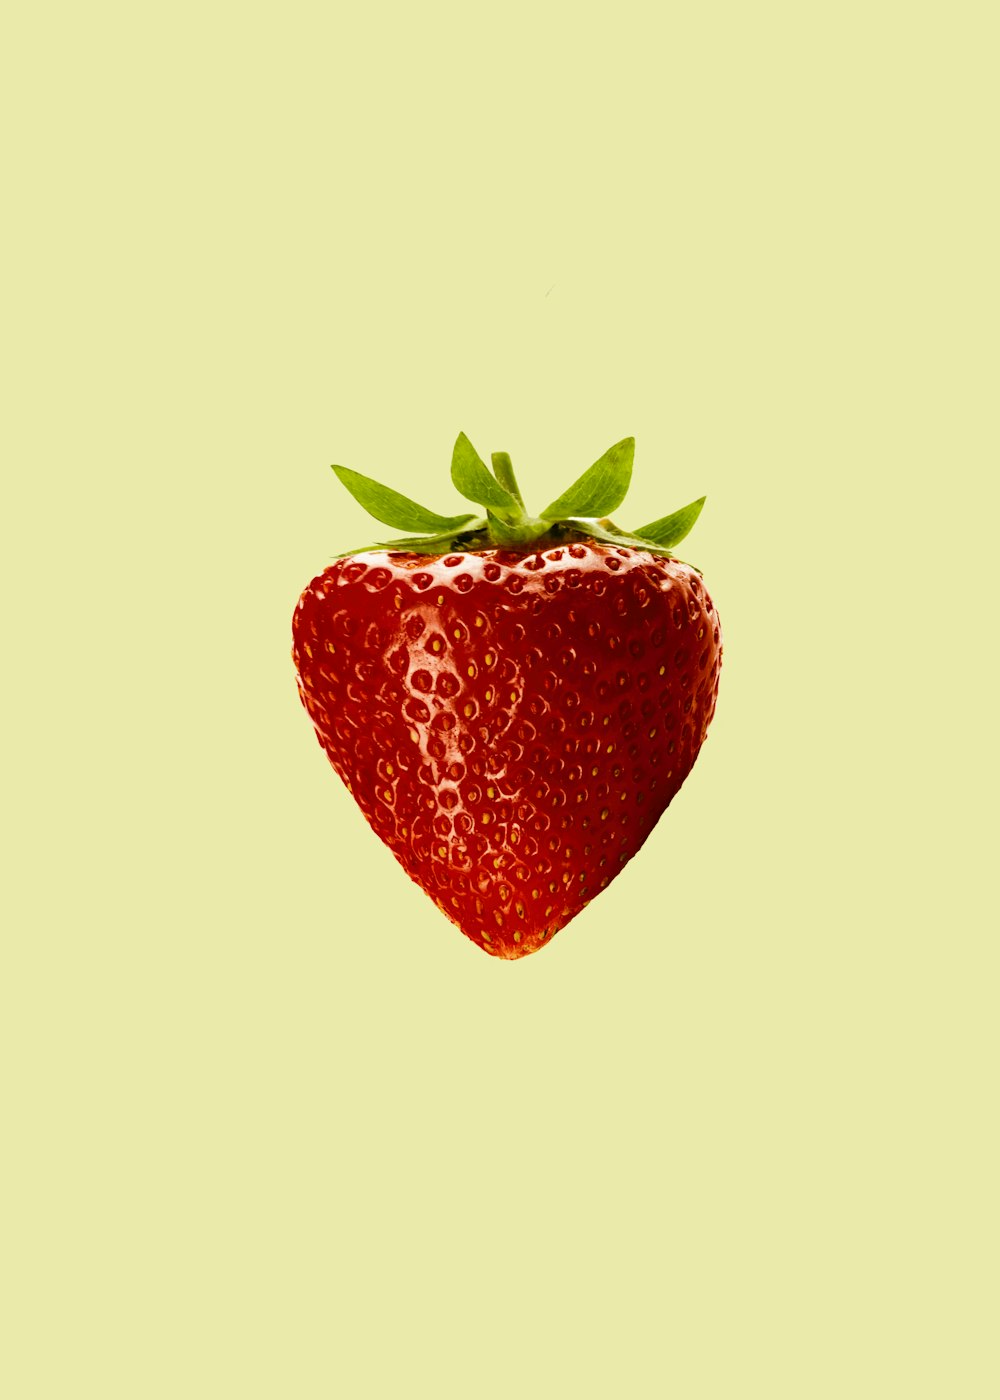 fruta de fresa roja con fondo blanco